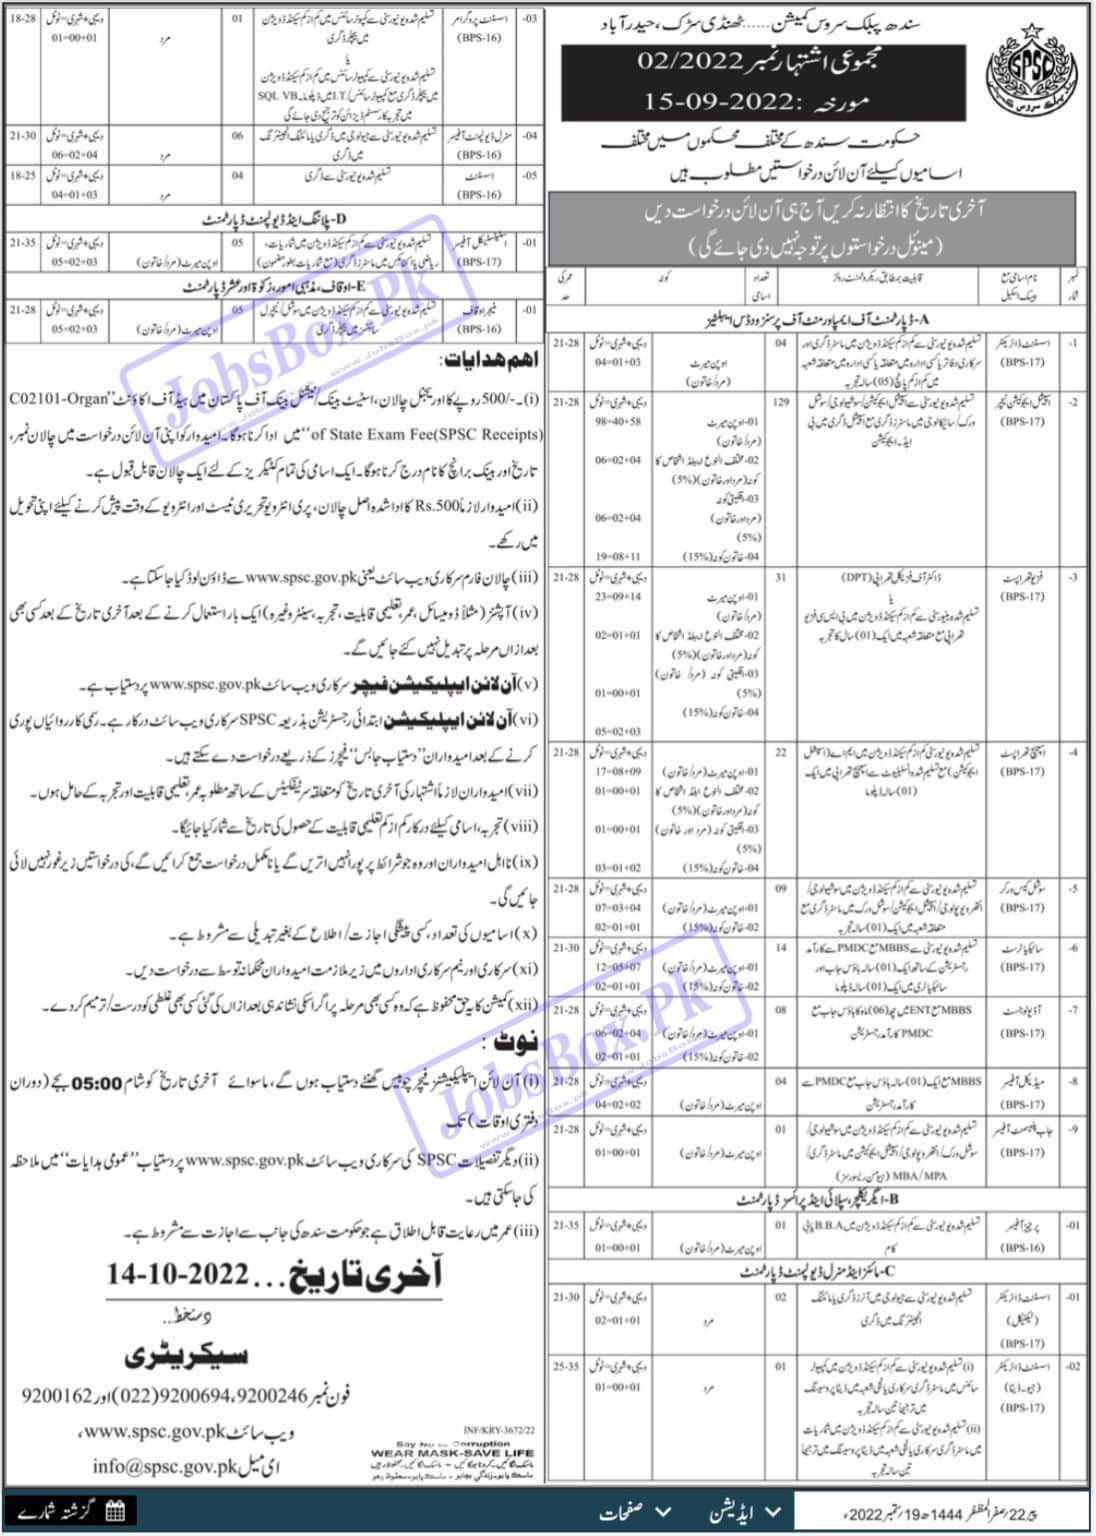 SPSC Jobs 2022 Advertisement - Sindh Public Service Commission Jobs 2022 - SPSC Jobs for Doctors 2022 - www.spsc.gov.pk jobs 2022 online form